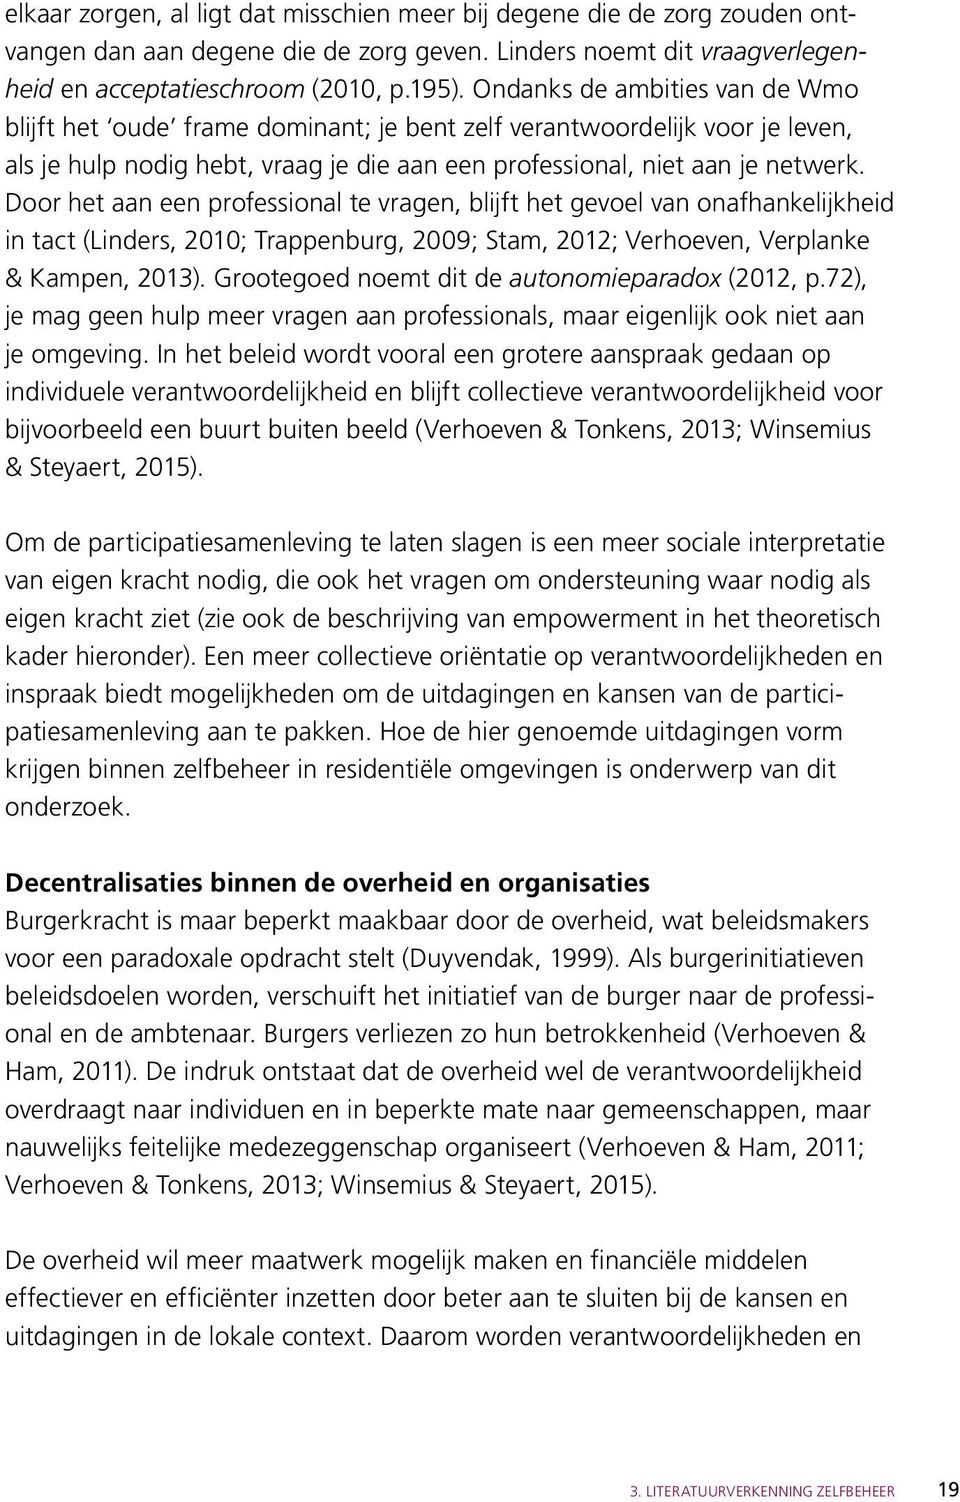 Door het aan een professional te vragen, blijft het gevoel van onafhankelijkheid in tact (Linders, 2010; Trappenburg, 2009; Stam, 2012; Verhoeven, Verplanke & Kampen, 2013).